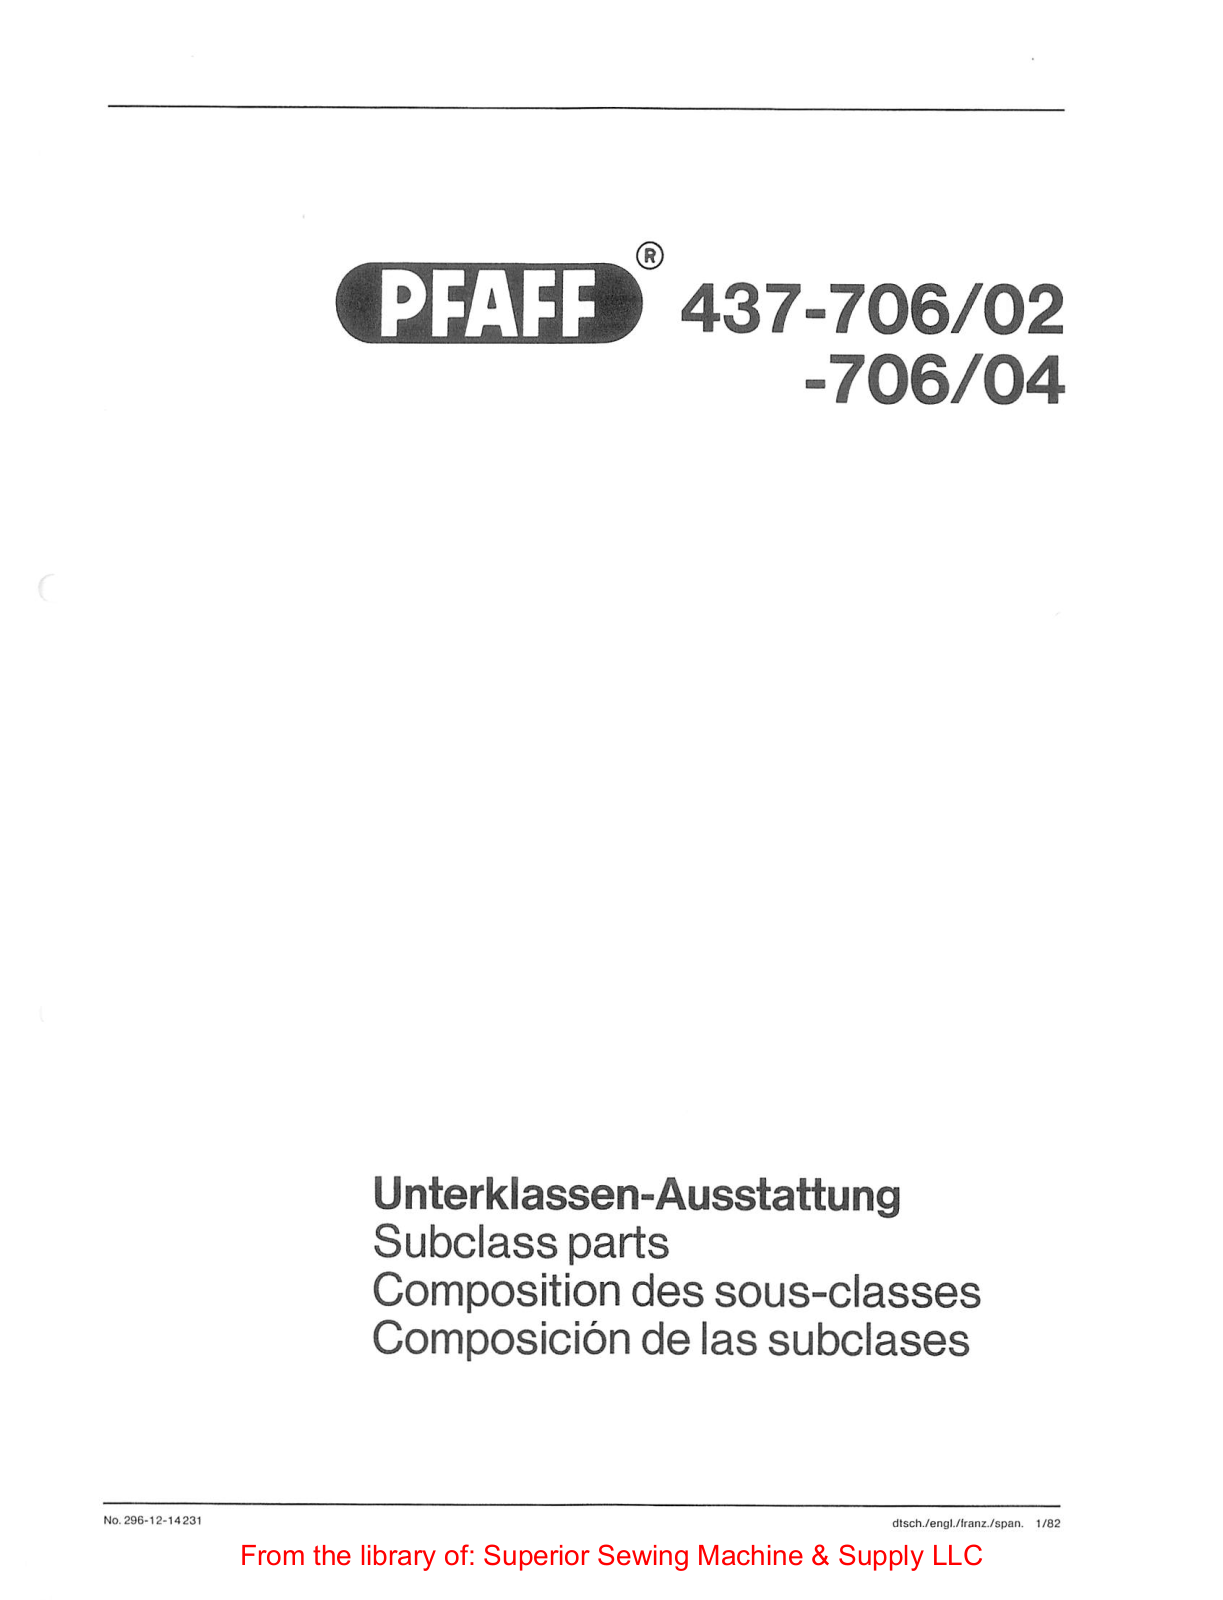 Pfaff 437-706-02, 437-706-04 Subclass Manual